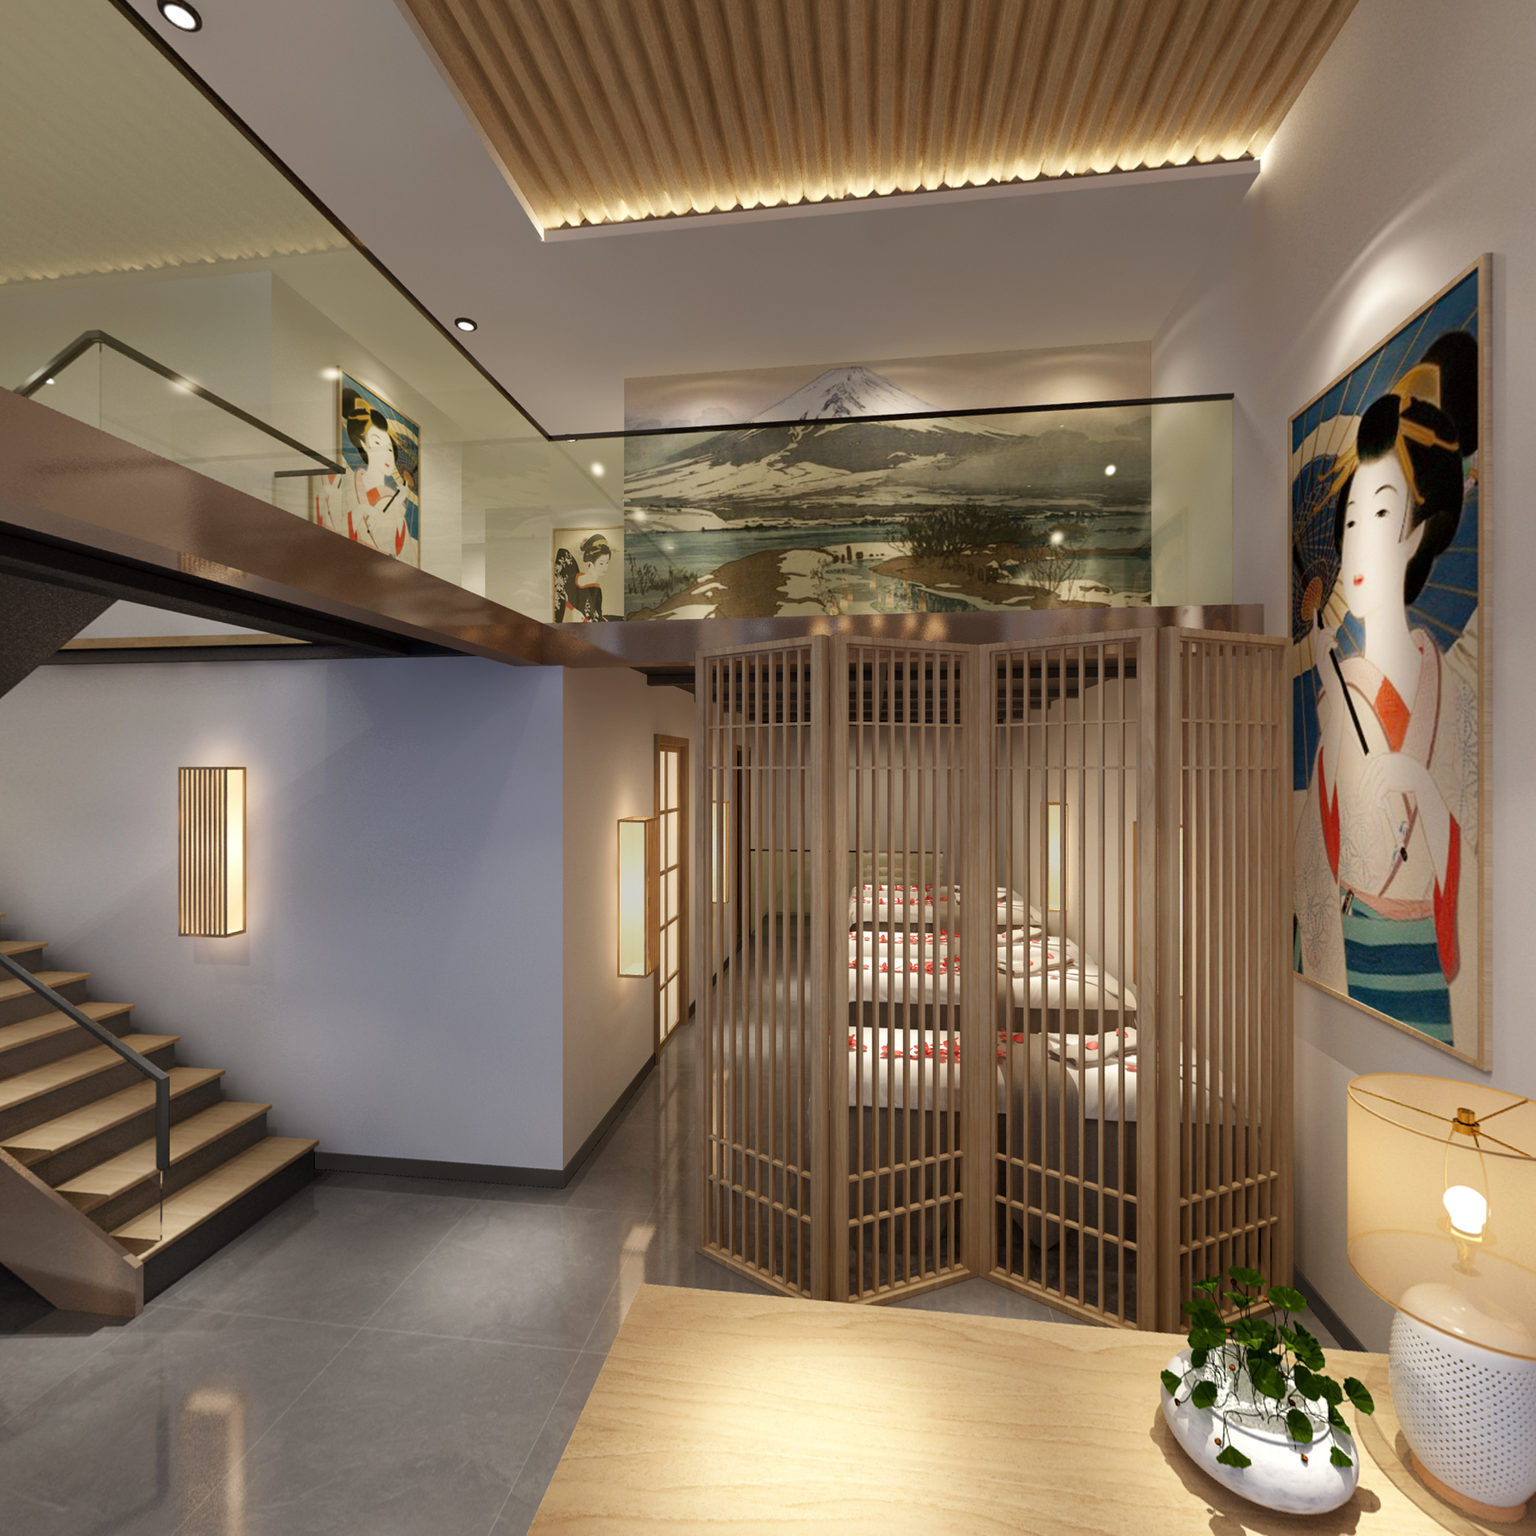 全景日式足浴店吧台 按摩床 沙发组合3d模型